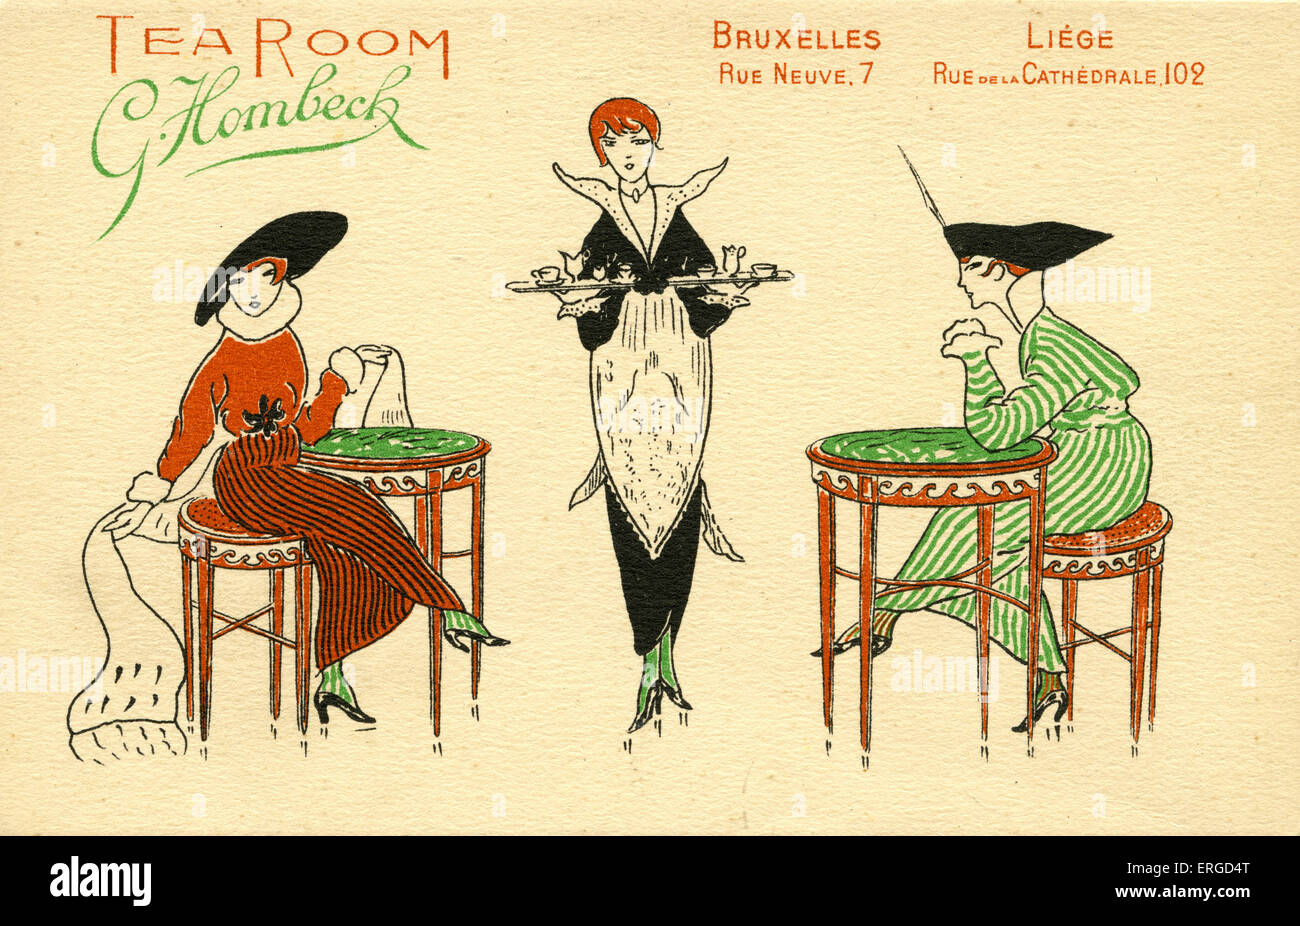 Belgische Werbung für G. Hombeck Tea Rooms. Wirbt für zwei Teestuben, eins in Brüssel (7 Rue Neuve) und eine in Lüttich (102 Stockfoto